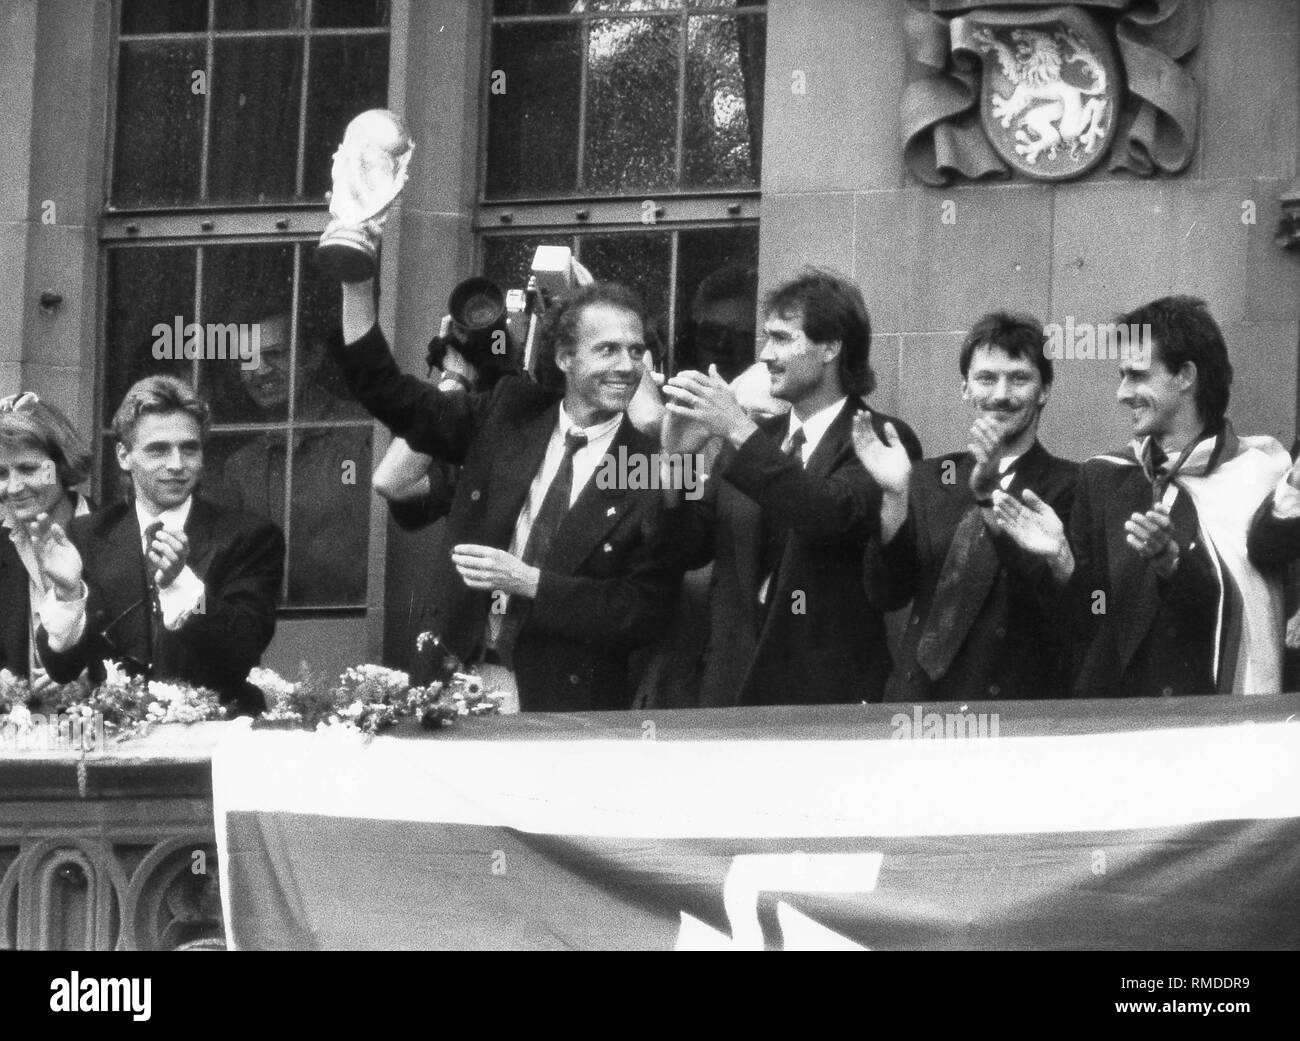 Joueurs allemands après la victoire à Rome à Francfort. Avec le trophée, Franz Beckenbauer, sur la gauche, Thomas Haessler, gauche de Beckenbauer, Raimond Aumann, extrême droite, Pierre Littbarski. Banque D'Images